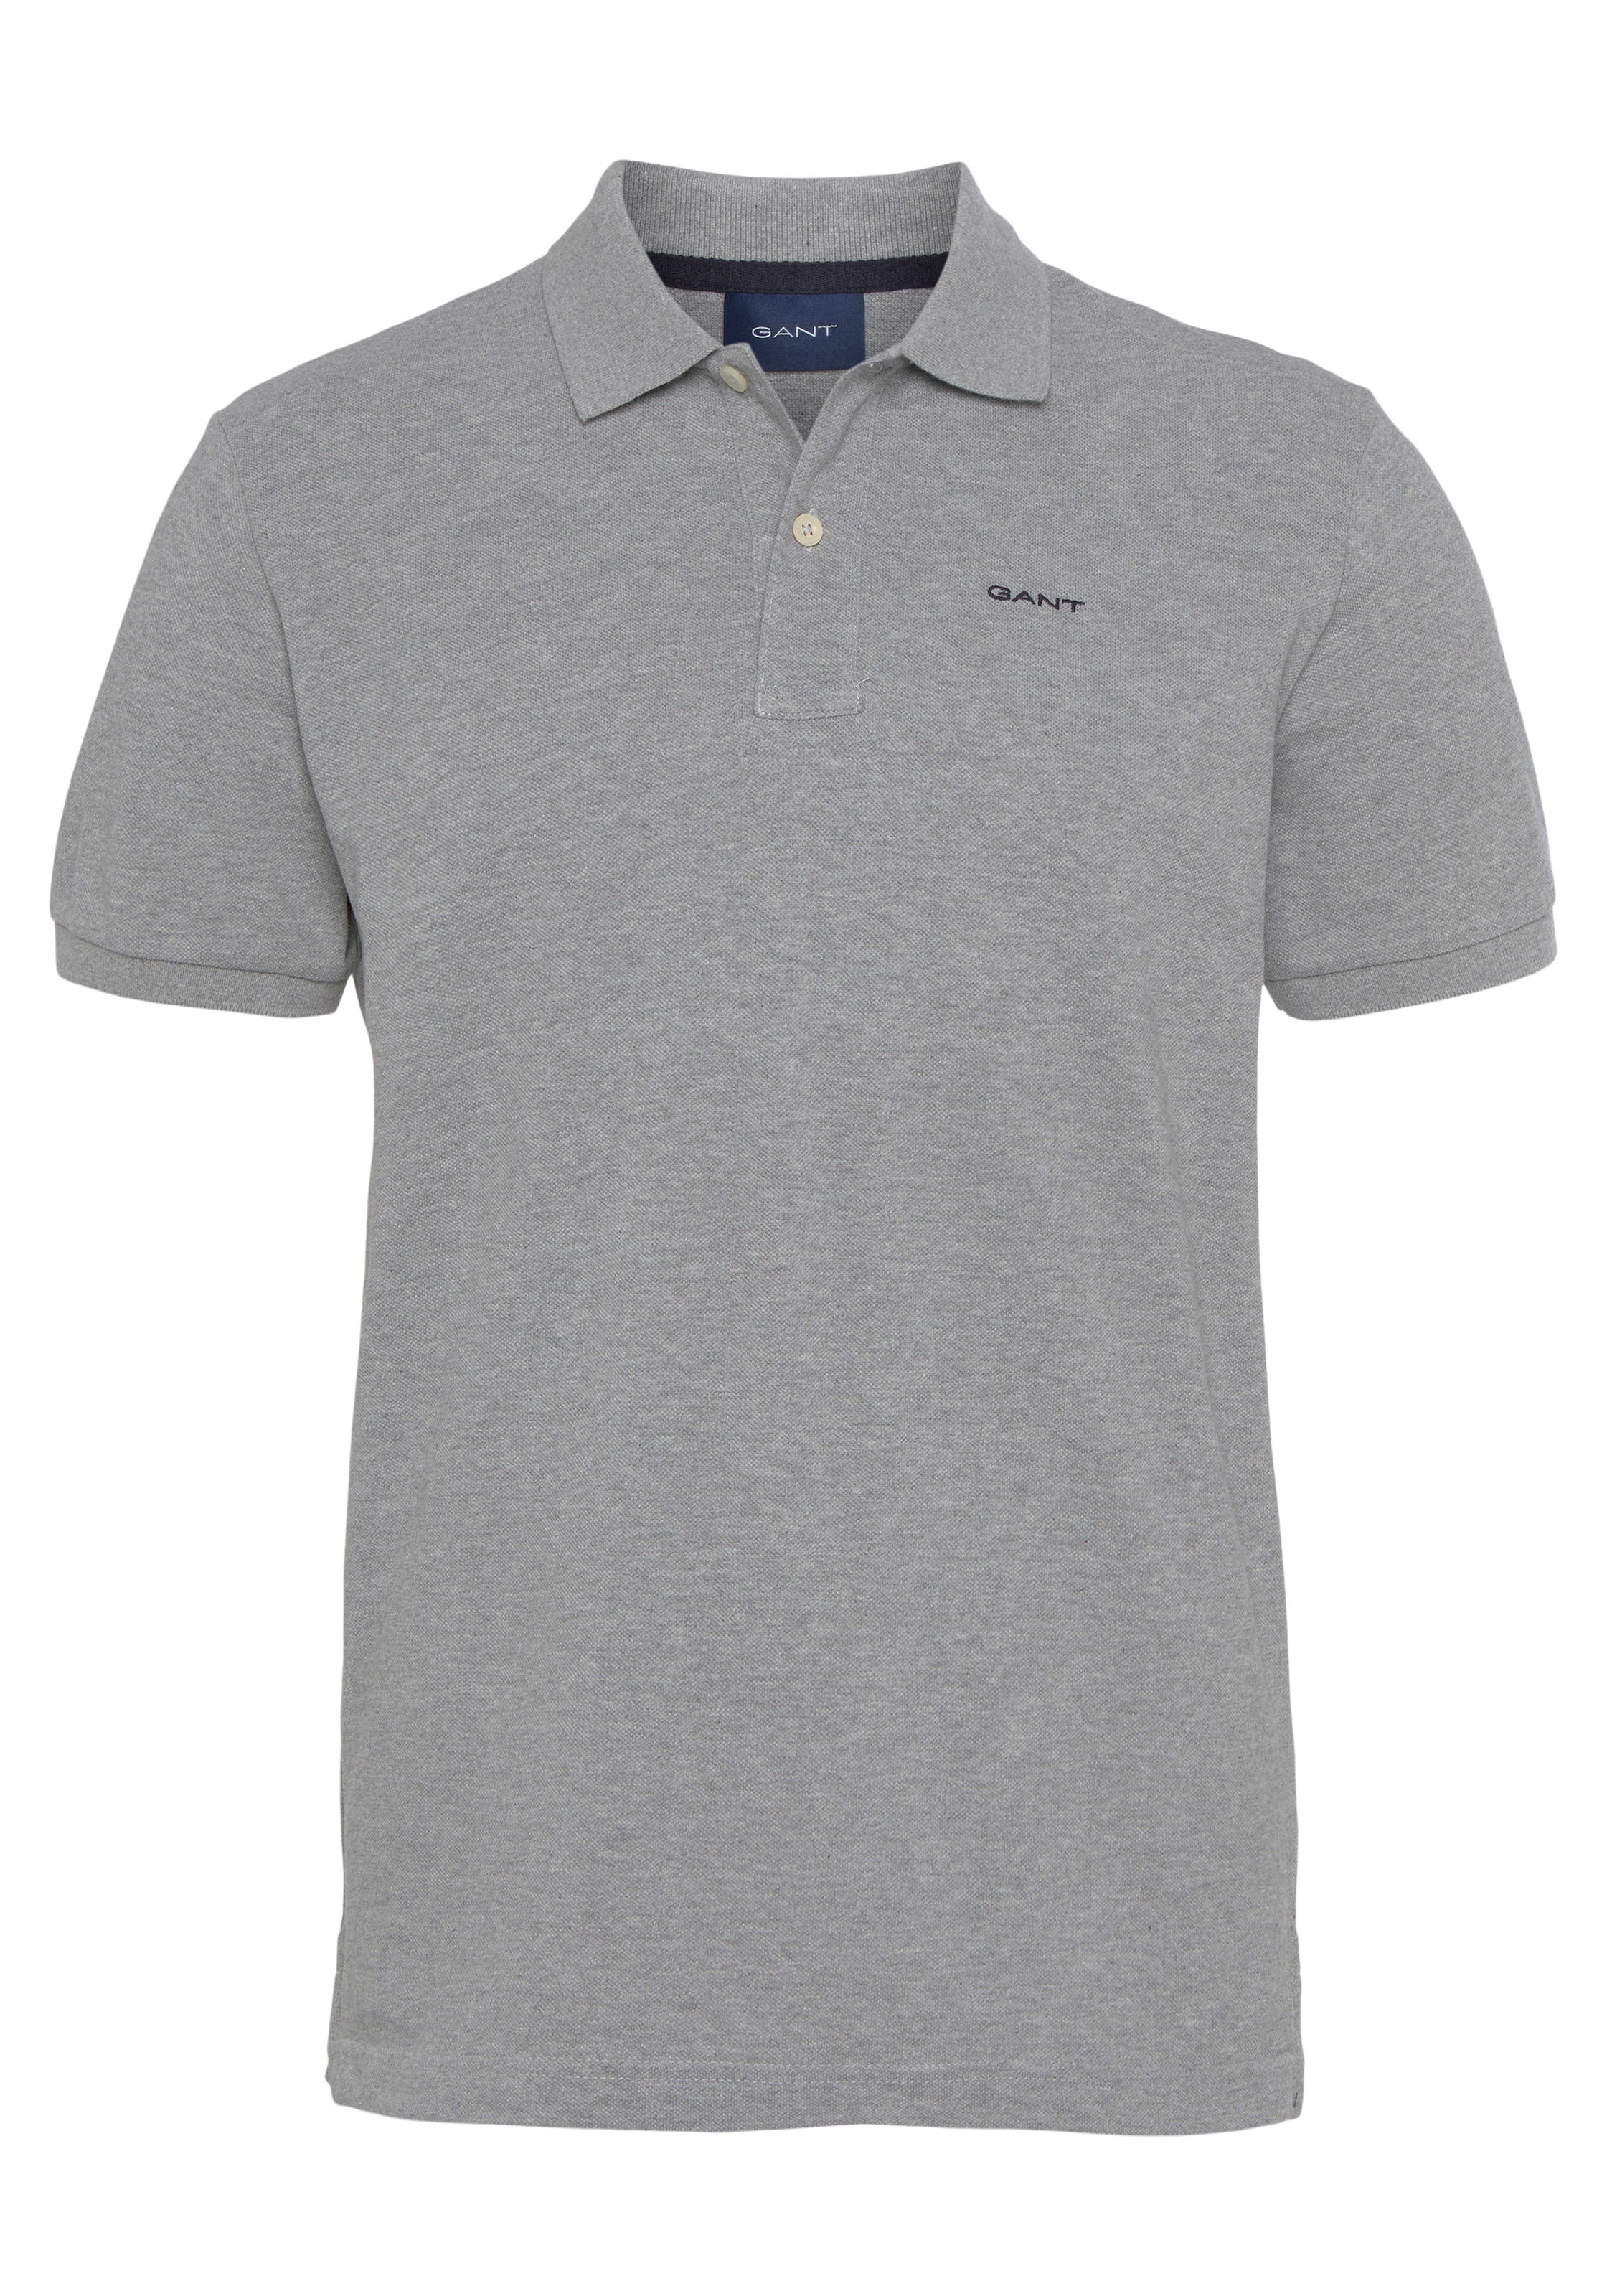 Piqué-Polo KA PIQUE »MD. Regular ♕ Casual, Gant Shirt, Fit, Qualität Smart Premium Poloshirt RUGGER«, bei